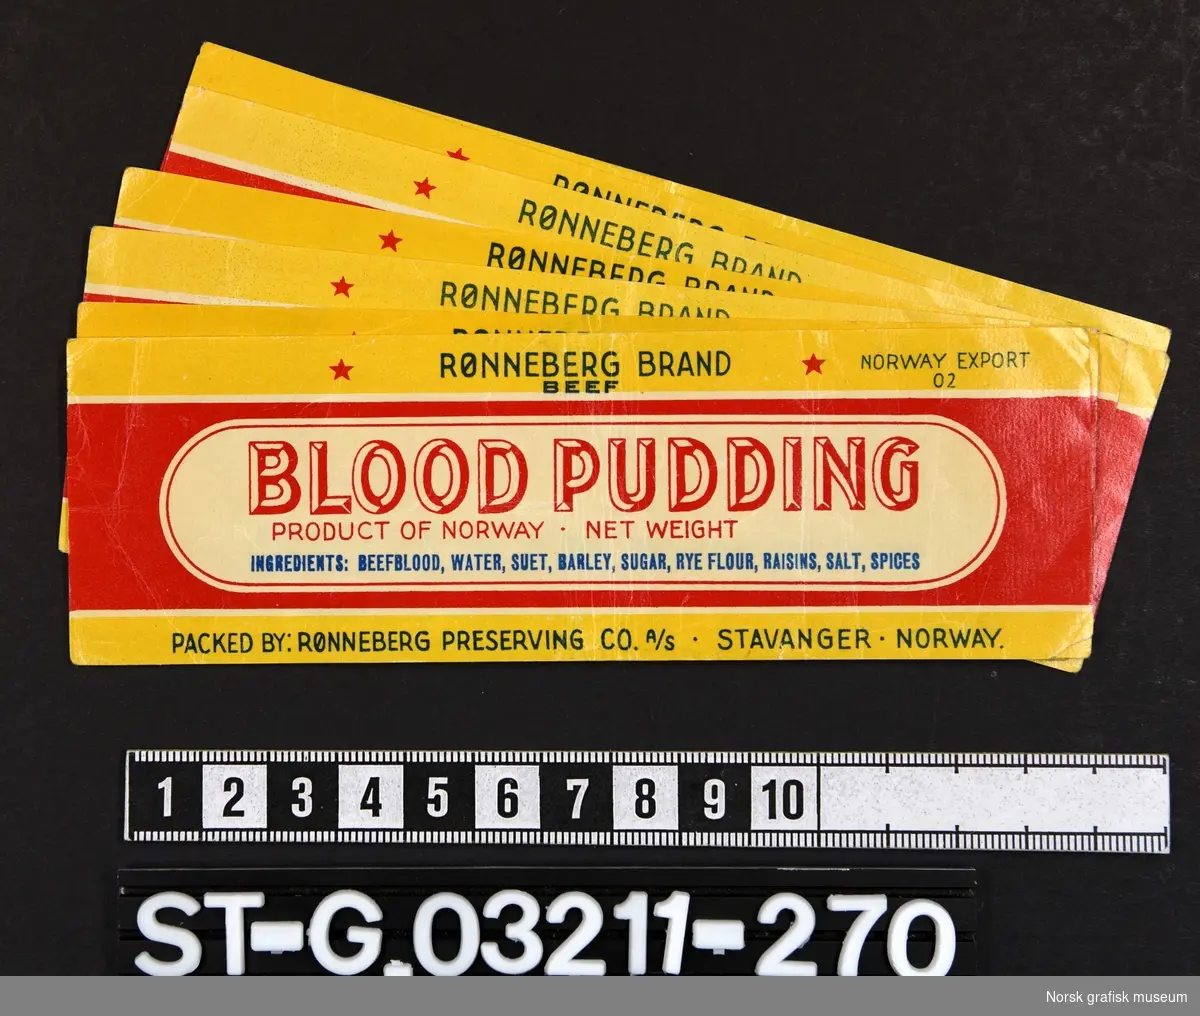 Etikett i rødt og gult, hvitt og blått, dominert av varebeskrivelsen i en hvit ramme. 

"Blood pudding"